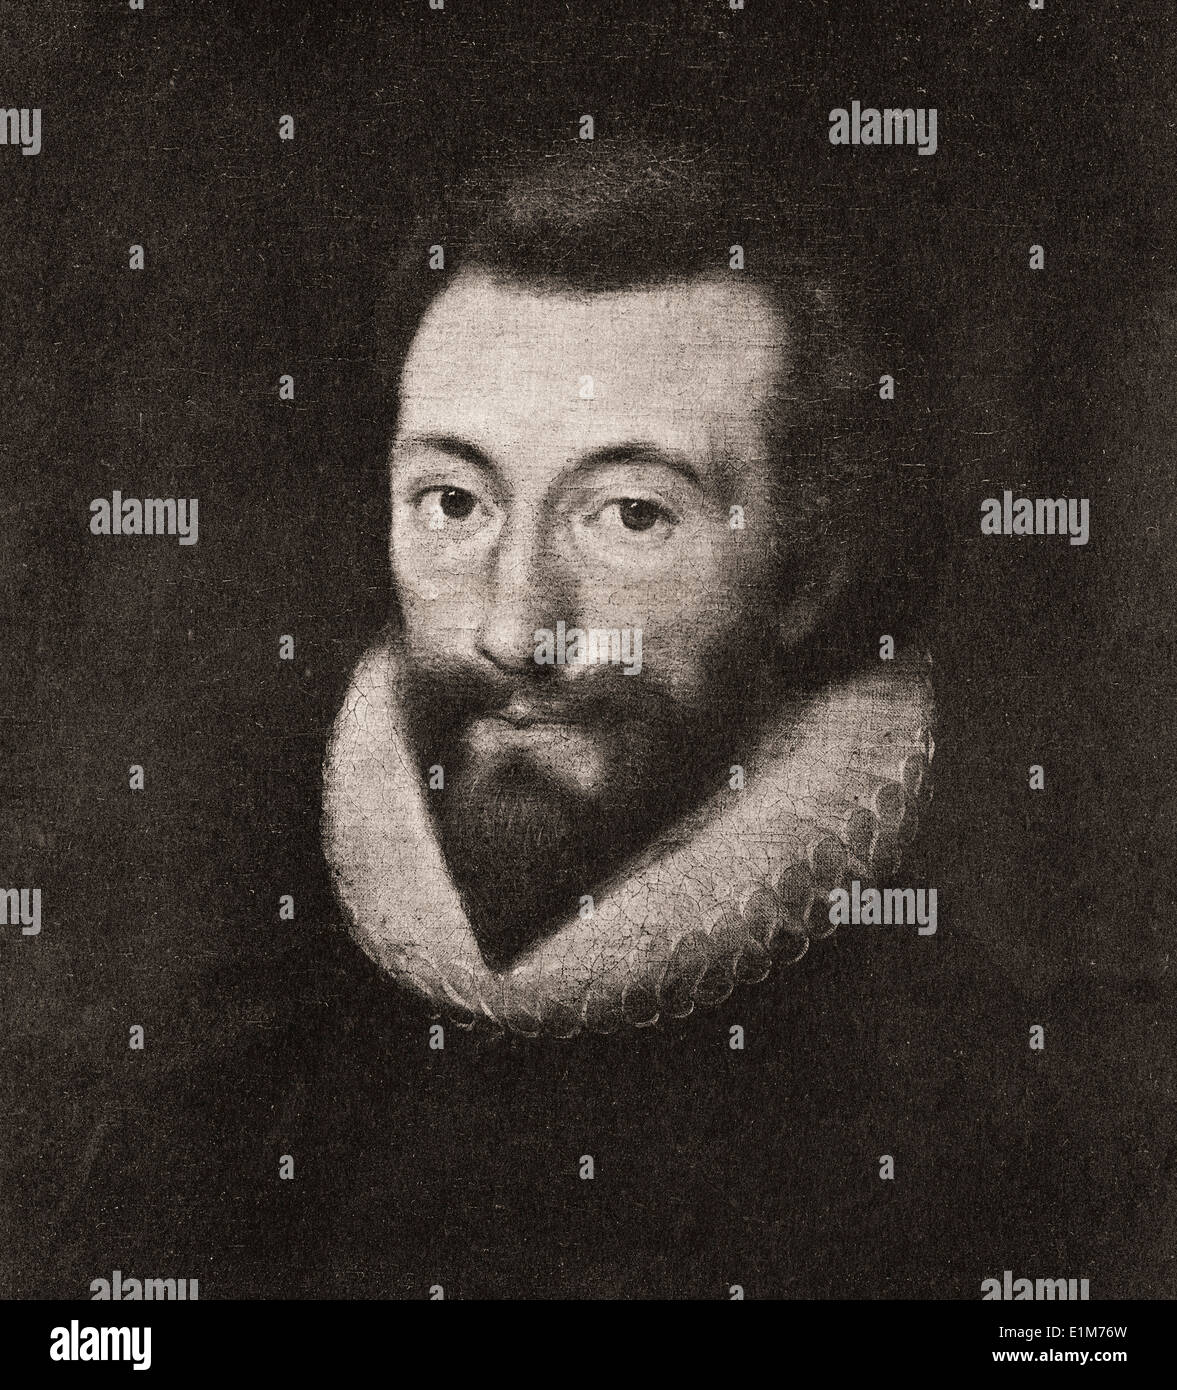 John Donne, de 44 años de edad. John Donne, 1572-1631. Poeta metafísico inglés, humorista, abogado y un clérigo. Foto de stock